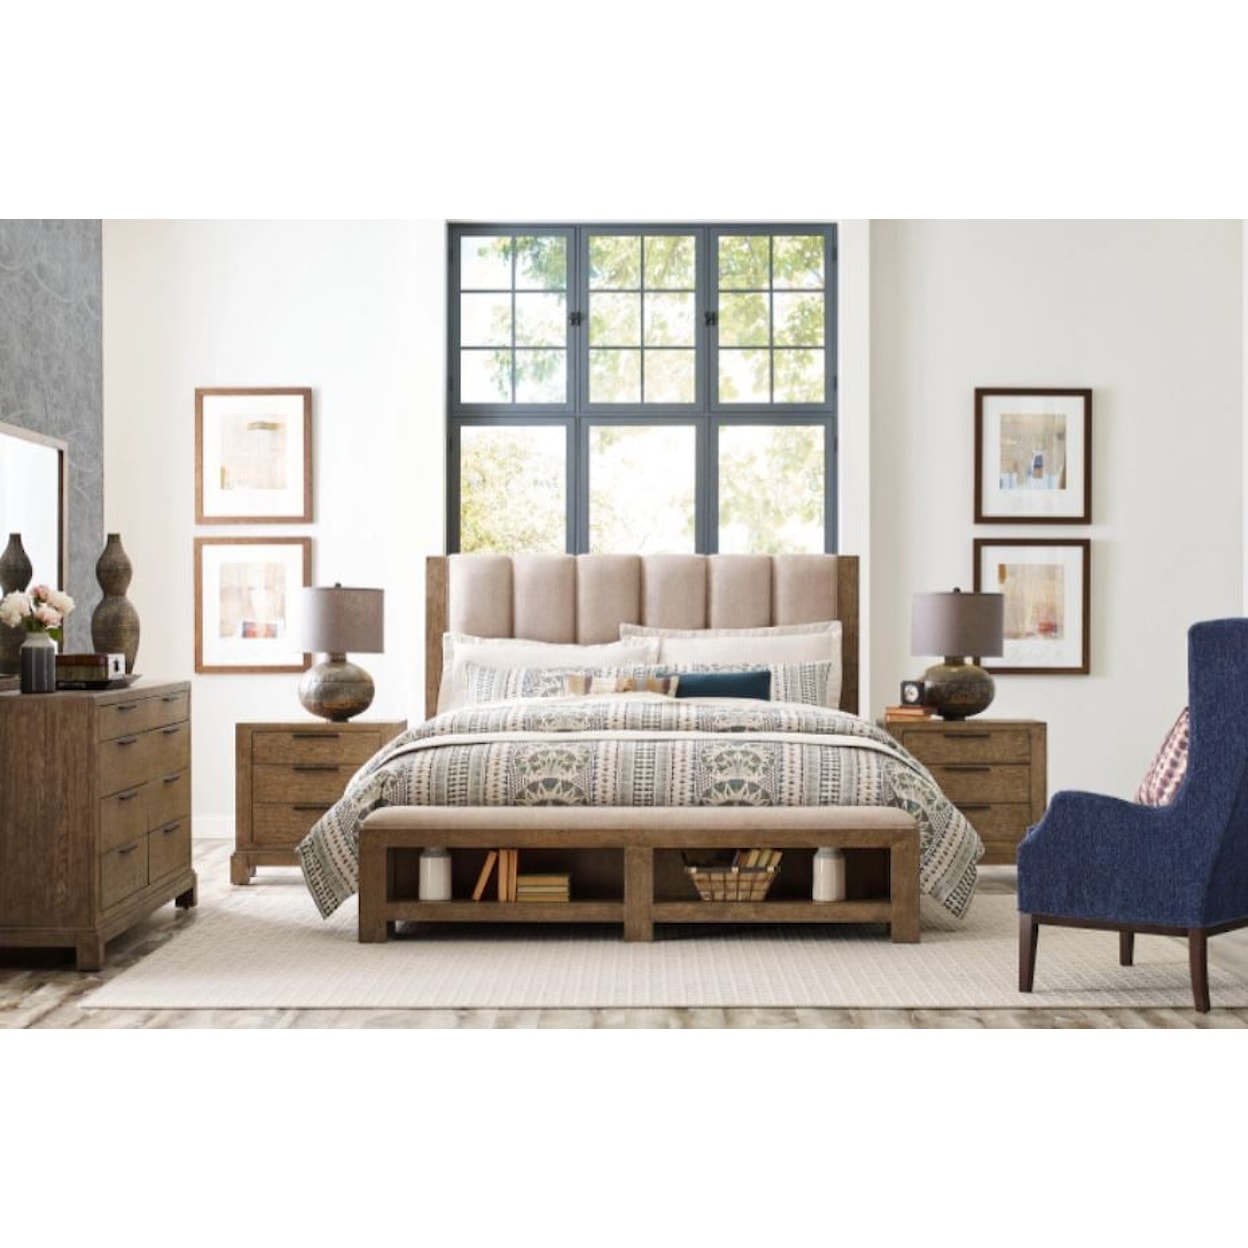 American Drew Skyline King Meadowood Upholstered Bed